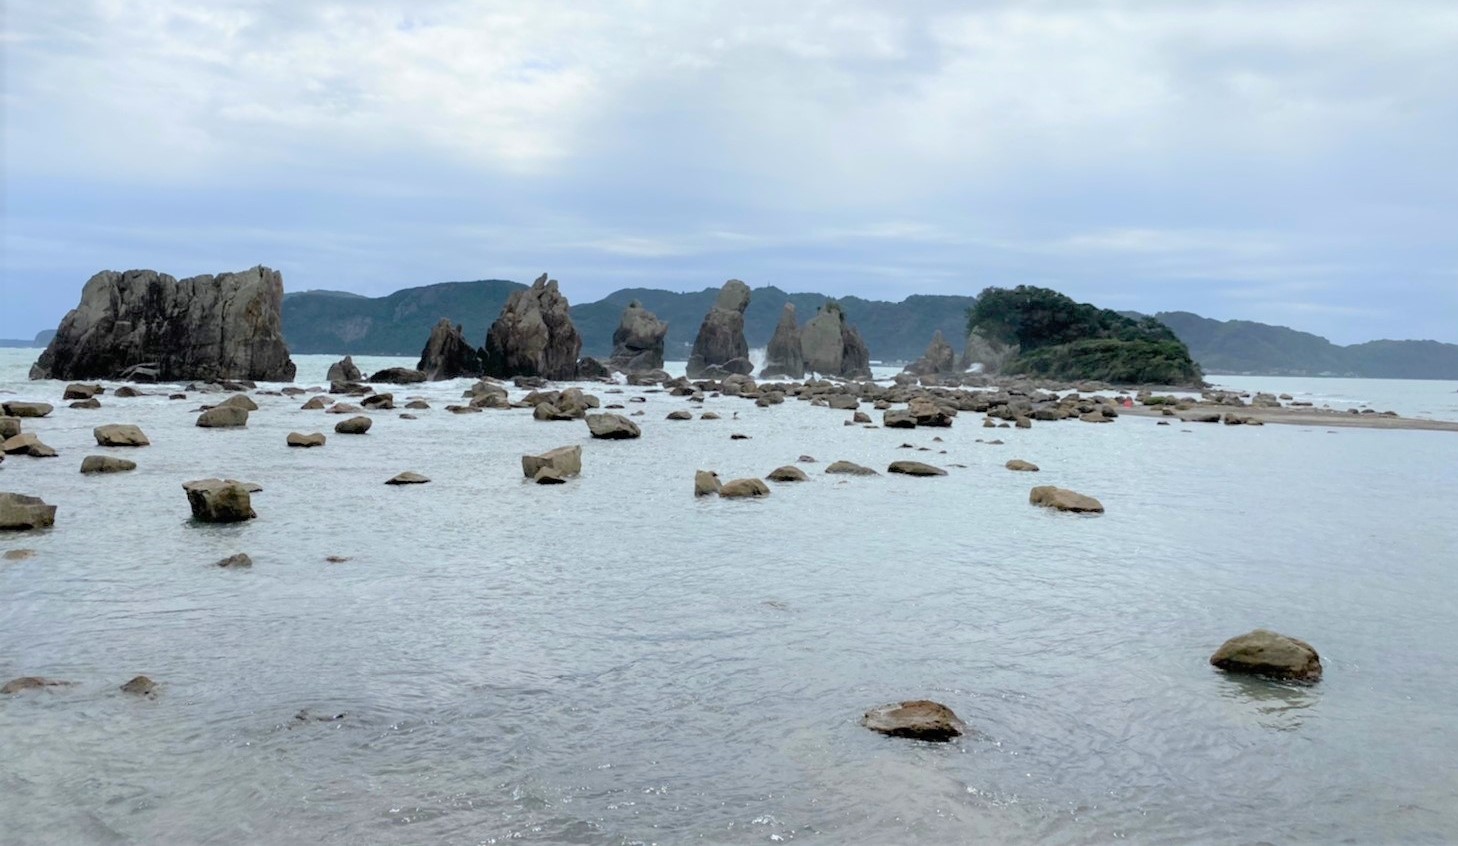 【和歌山県串本町】『橋杭岩｜はしぐいいわ』の海釣りガイド（釣れる魚・駐車場・トイレ）